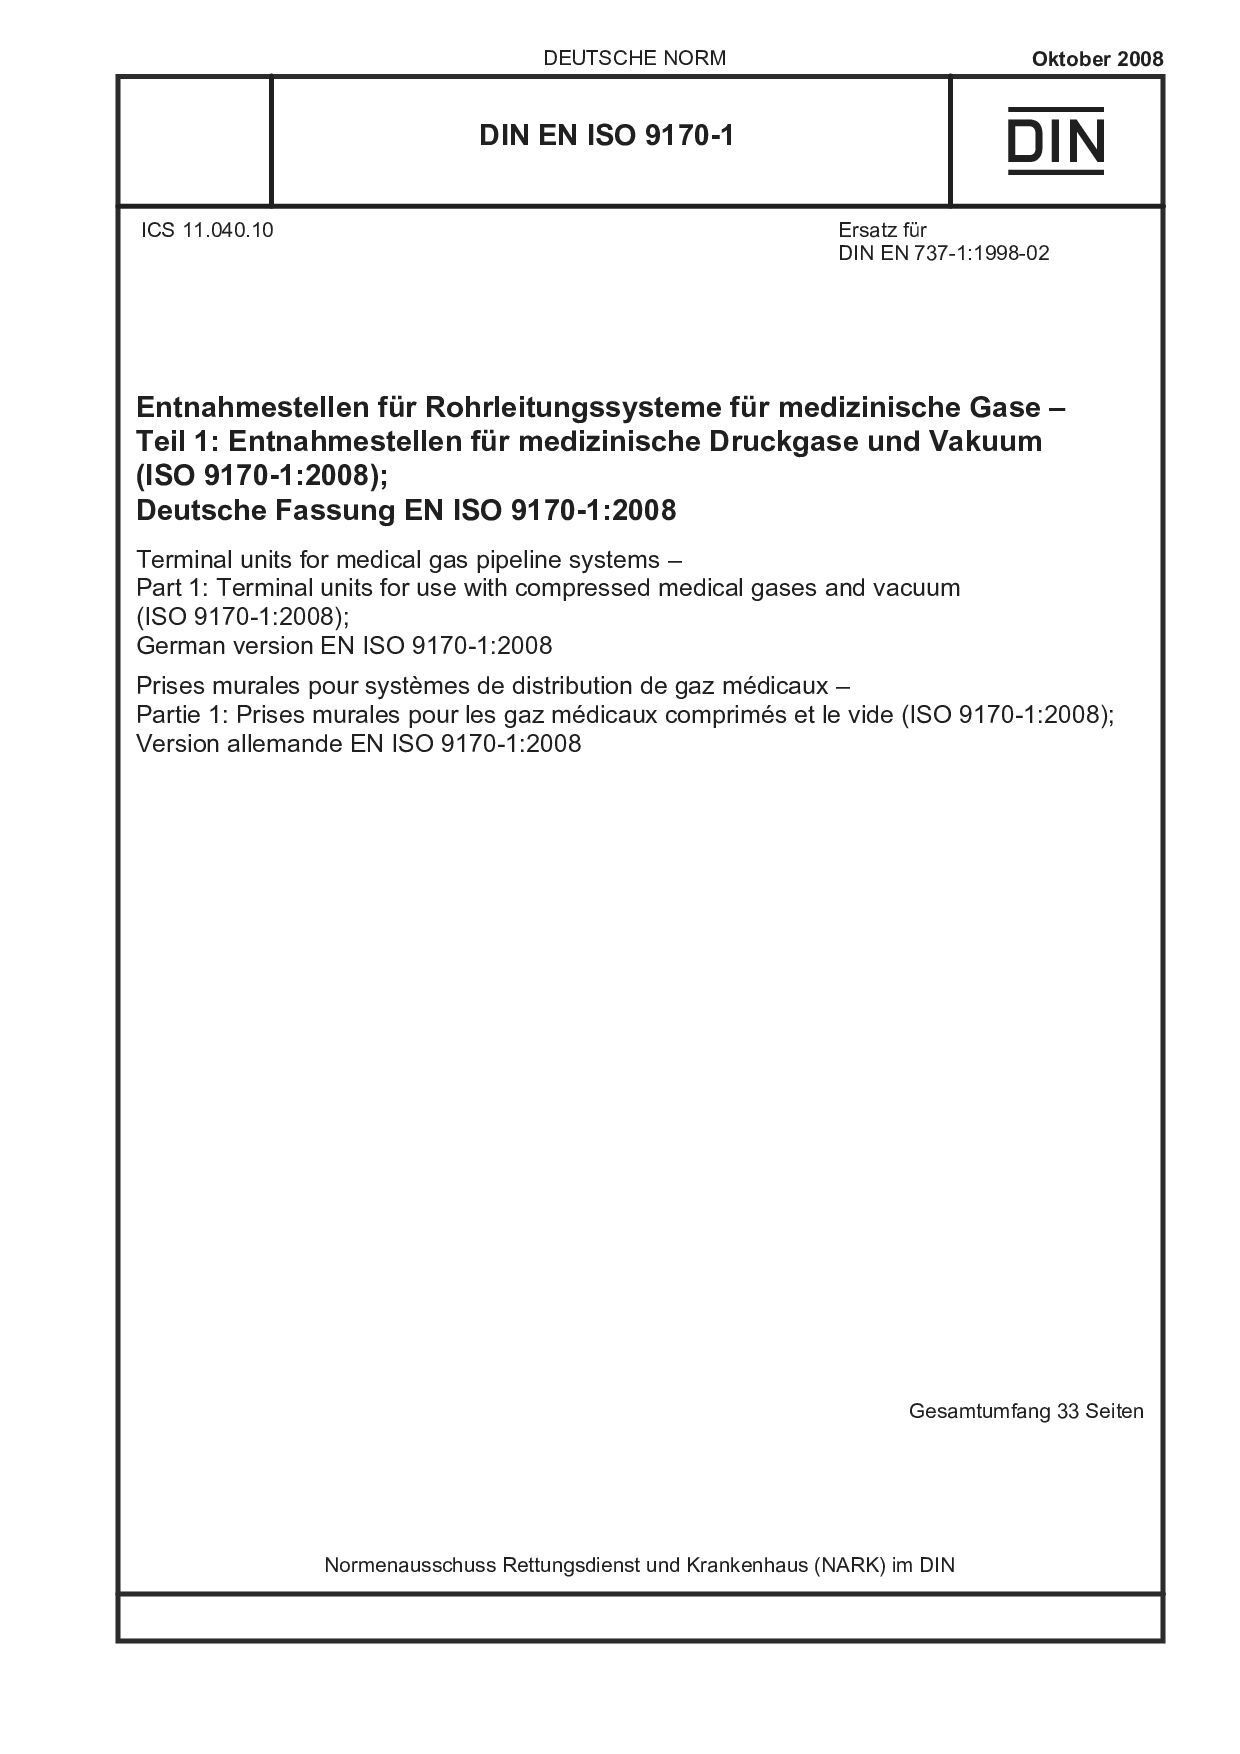 DIN EN ISO 9170-1:2008